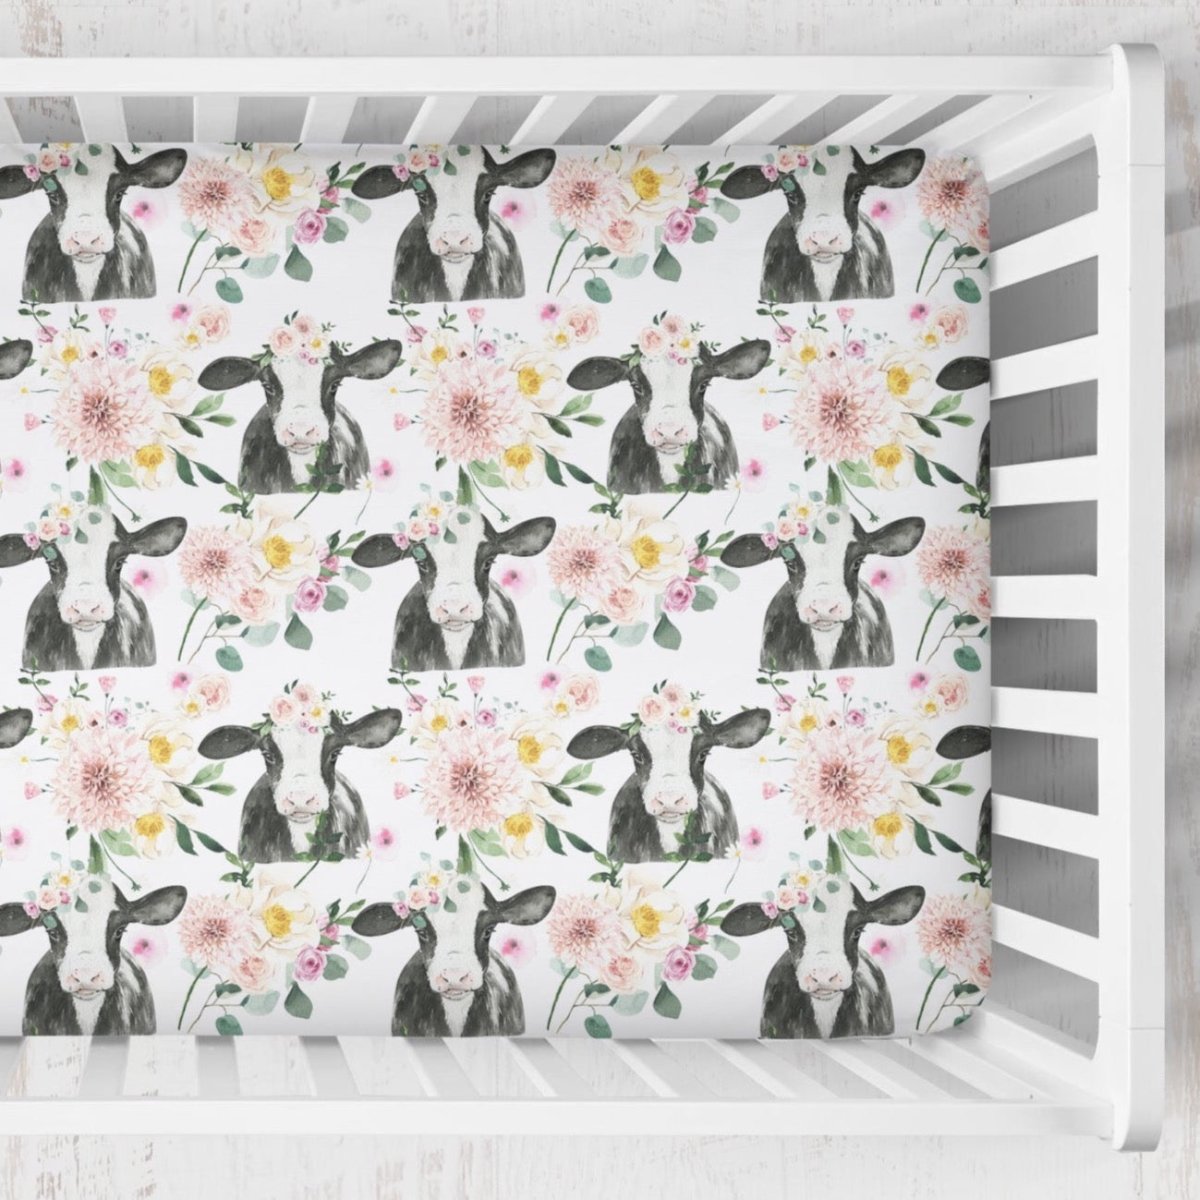 Farm Floral Calf Crib Sheet - gender_girl, Theme_Farm, Theme_Floral